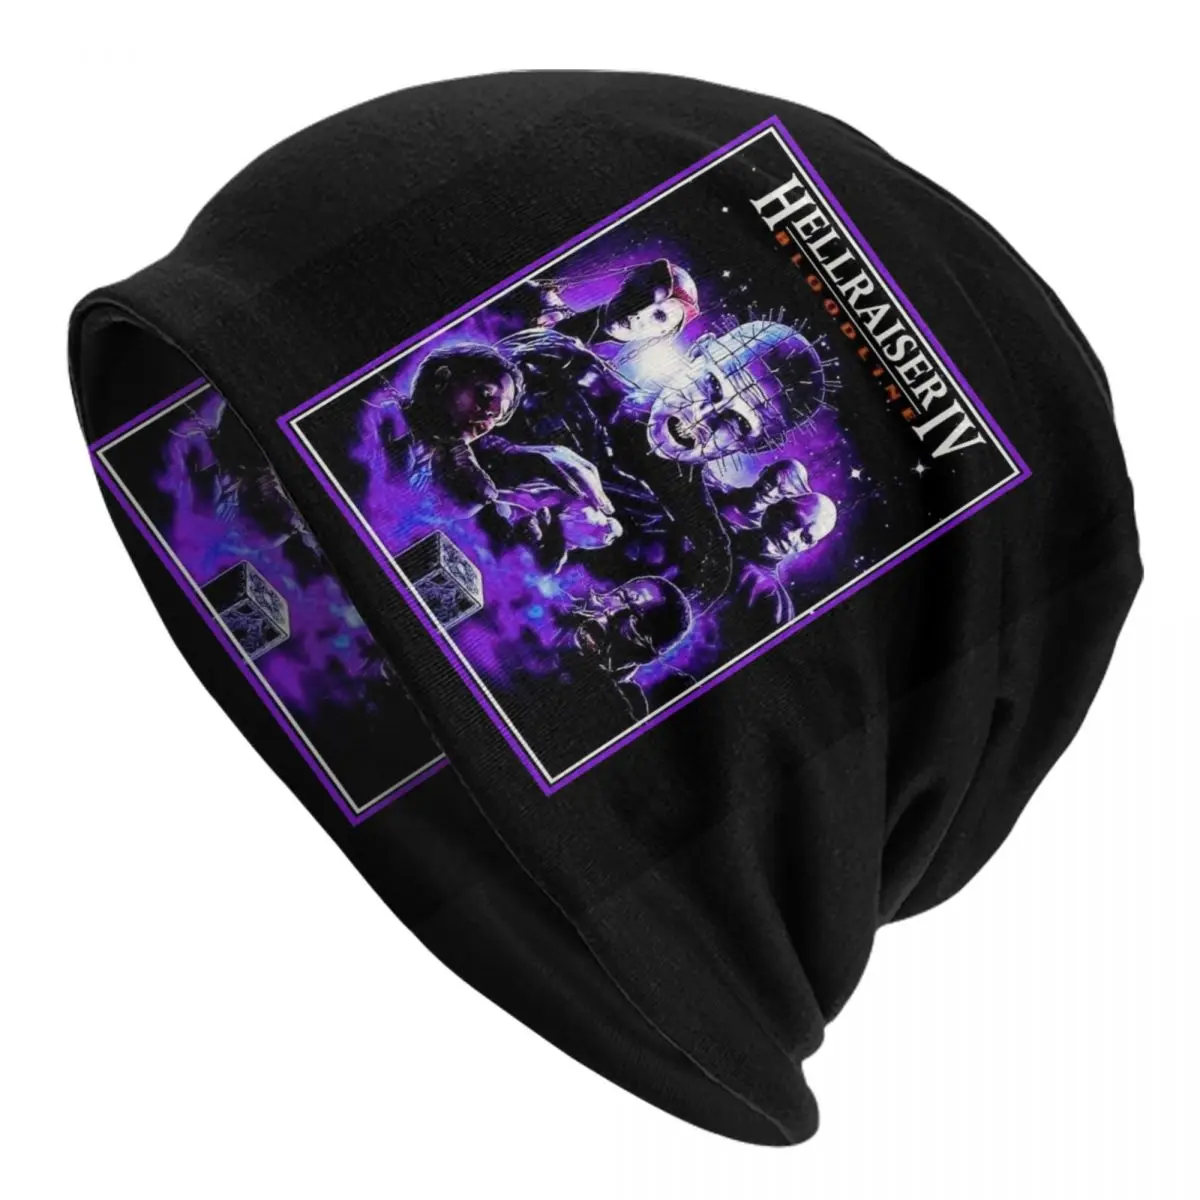 

Pinhead Hellraiser Skullies Beanies Caps Hip Hop Winter Warm Men Women Knit Hat Adult Unisex Halloween Horror Movie Bonnet Hats